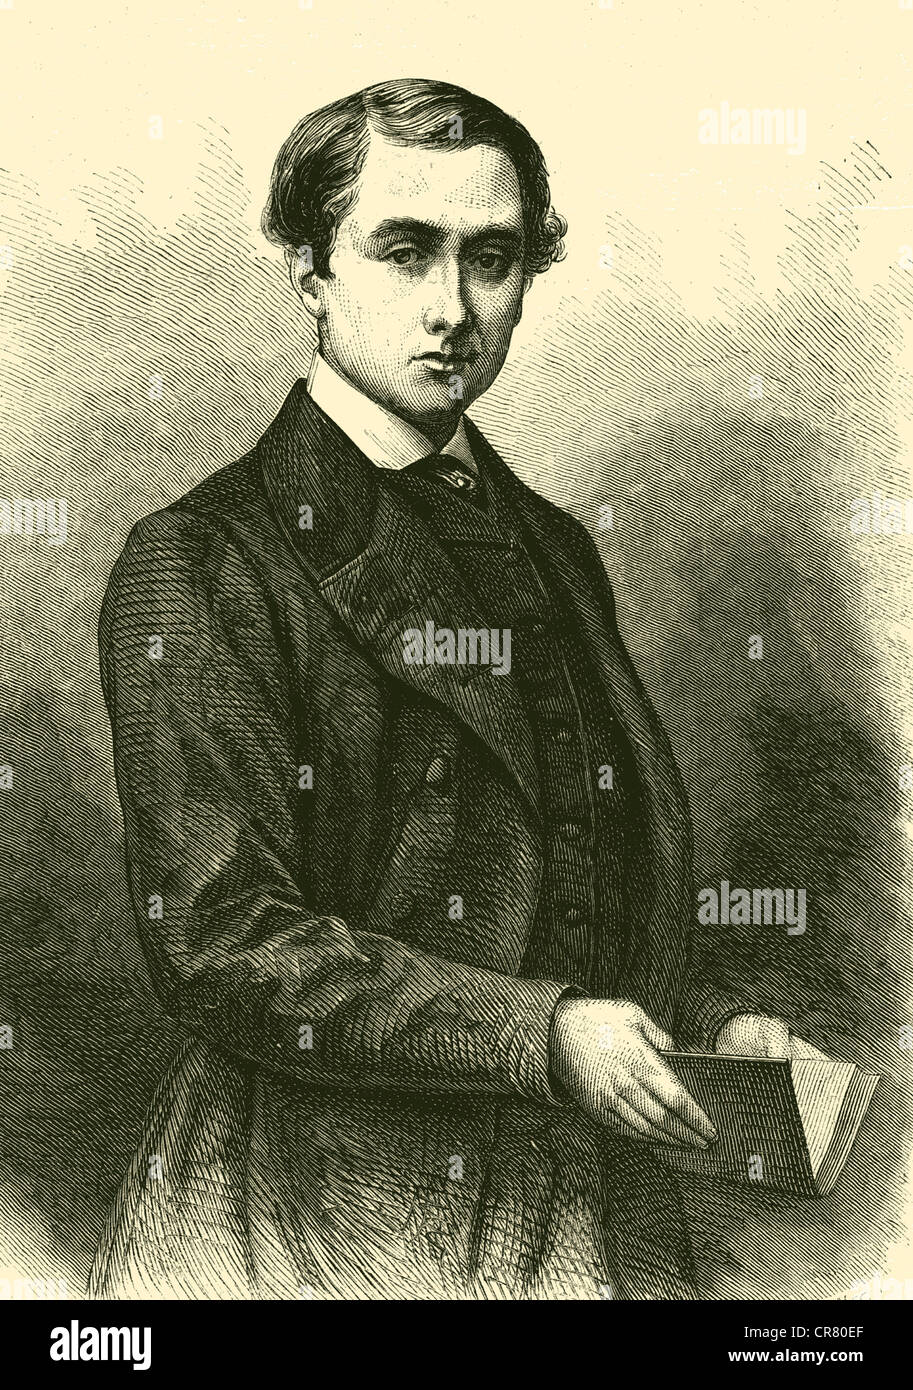 Alfred, duque de Sajonia-coburgo y Gotha, 1844 - 1900, ilustración histórica, 1866 Foto de stock